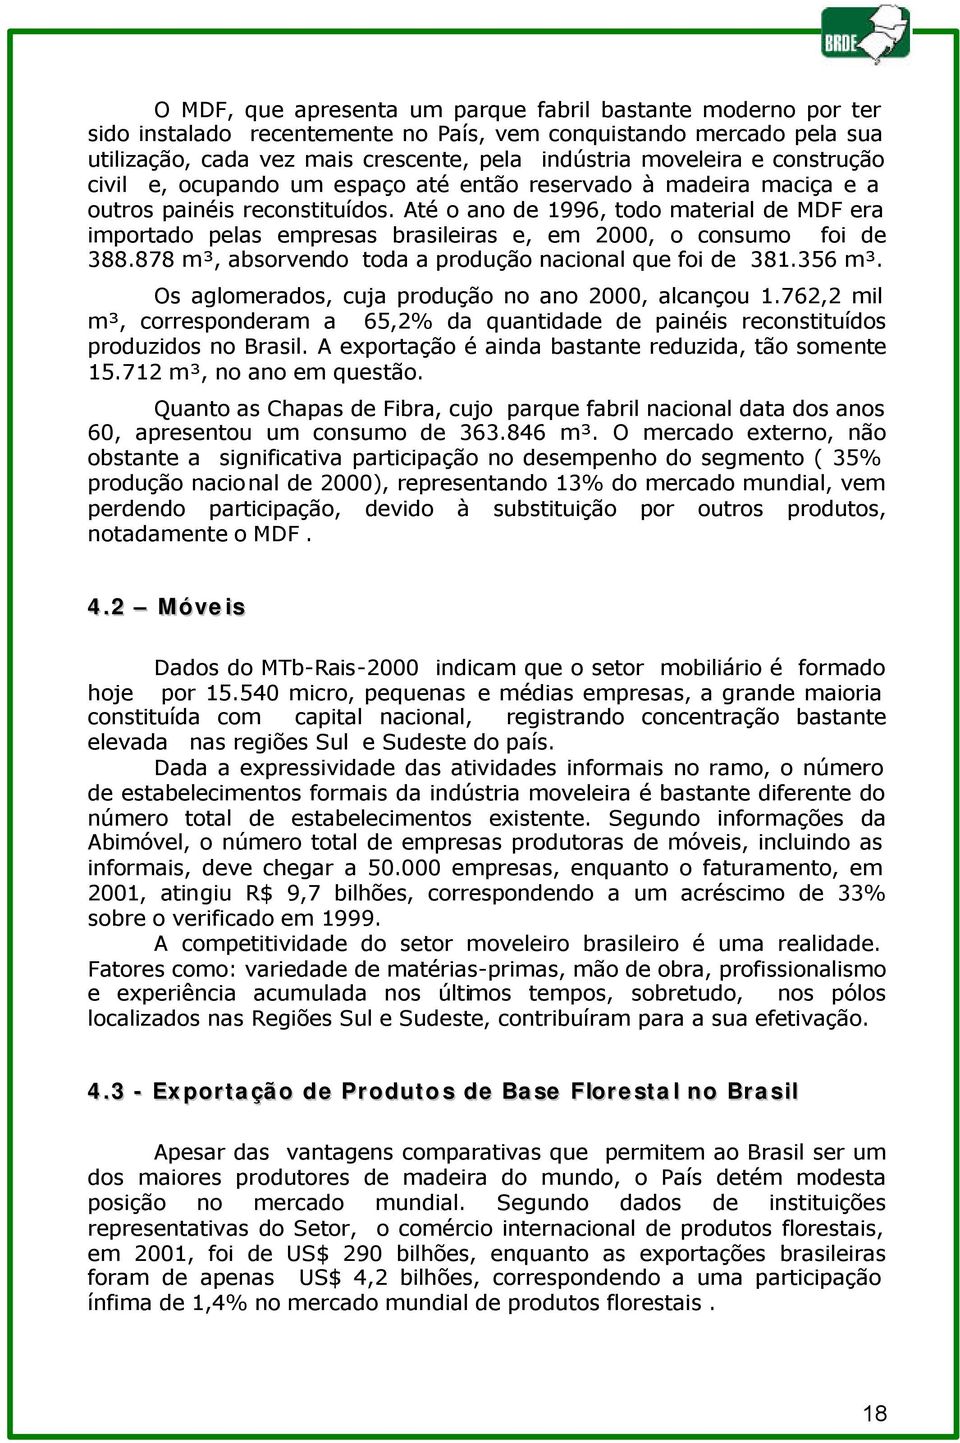 Até o ano de 1996, todo material de MDF era importado pelas empresas brasileiras e, em 2000, o consumo foi de 388.878 m³, absorvendo toda a produção nacional que foi de 381.356 m³.